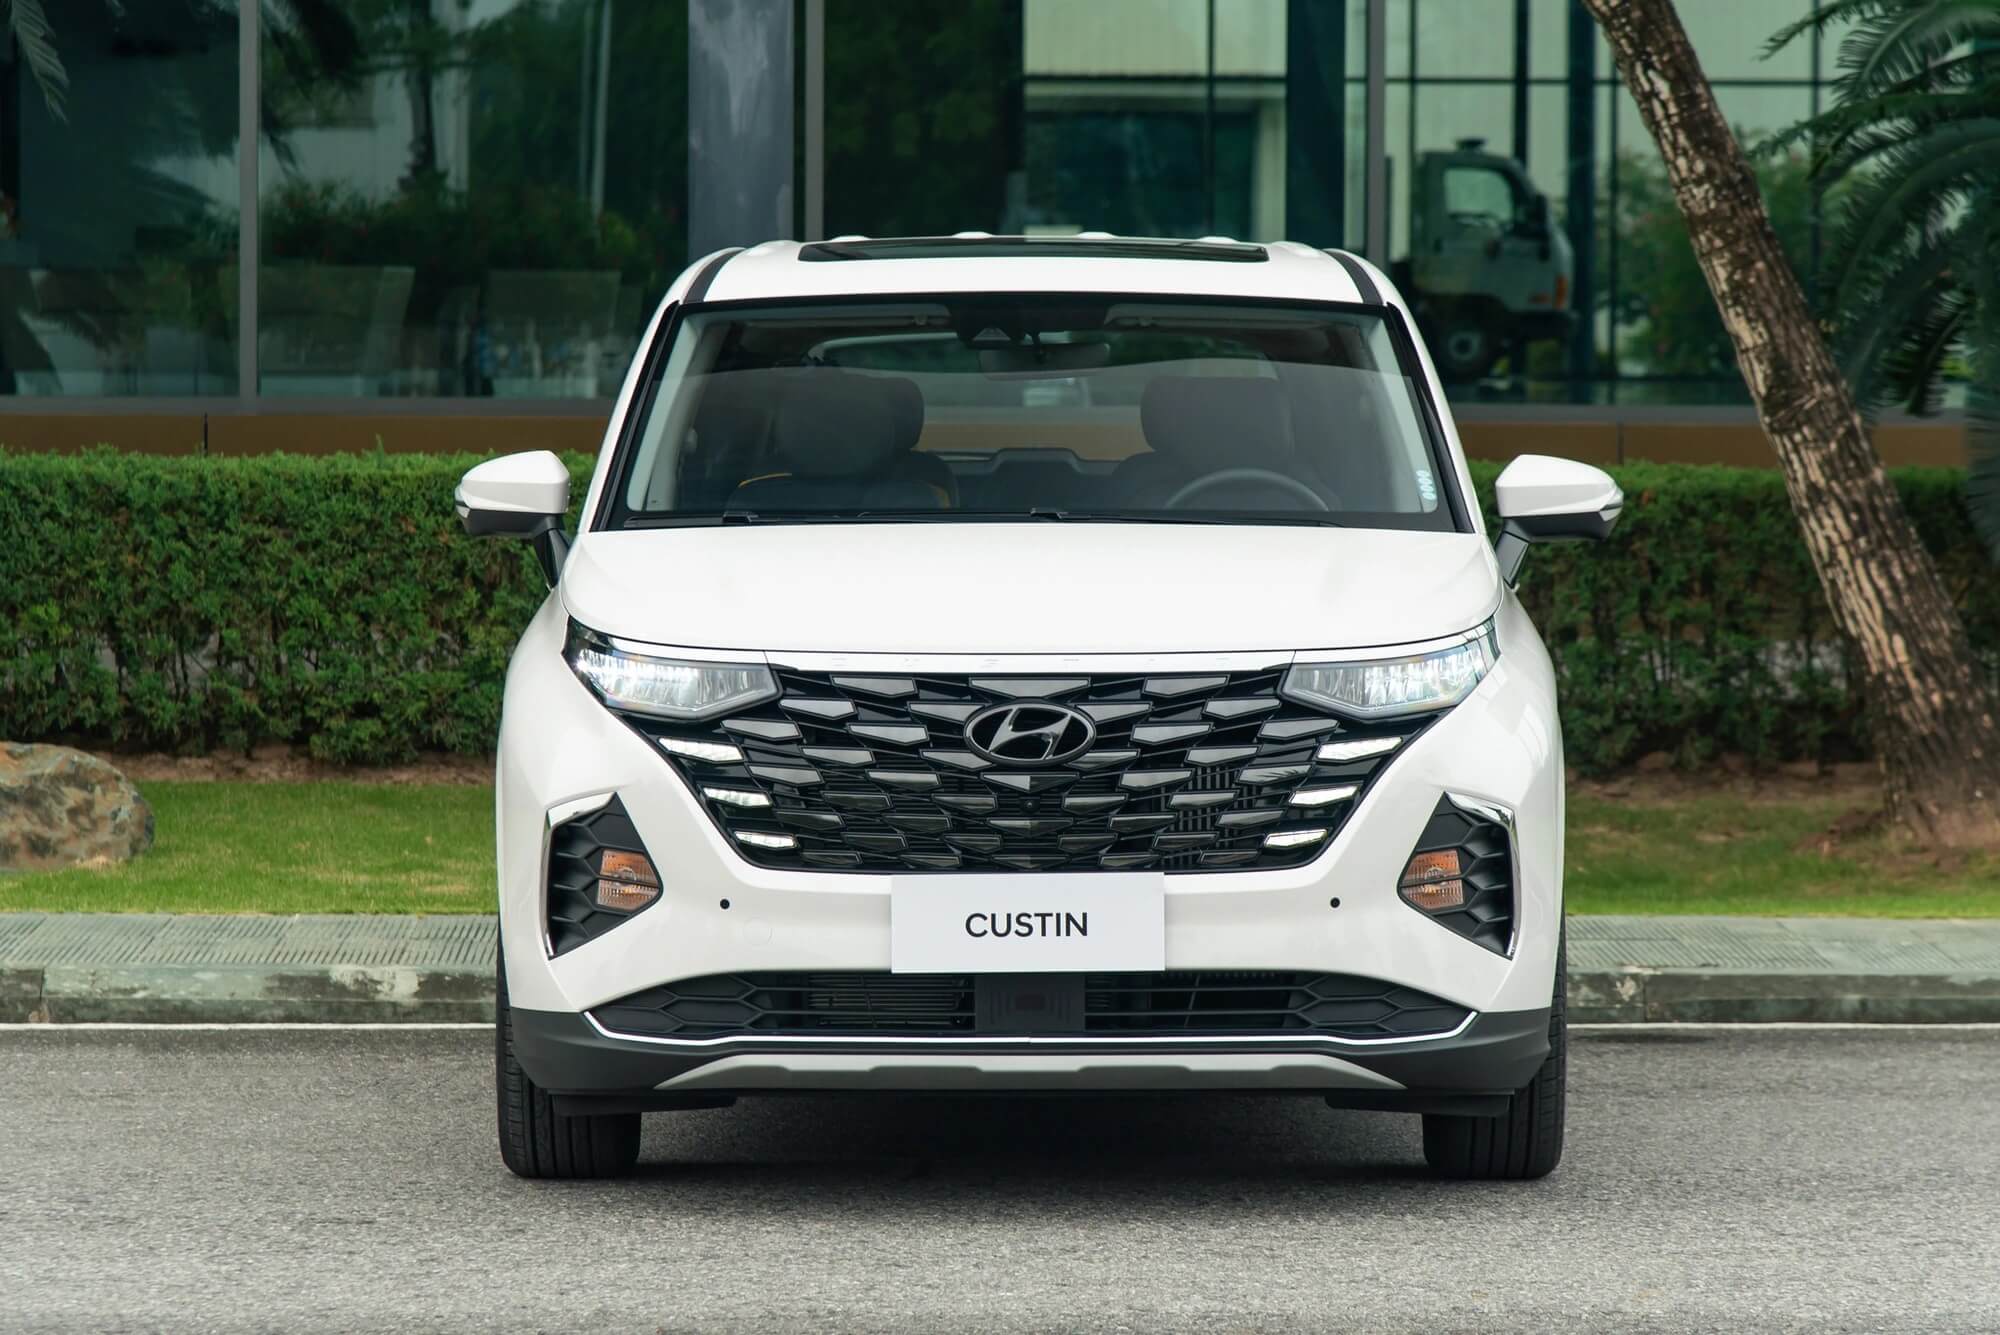 Thiết kế đầu xe Hyundai Custin phiên bản màu trắng